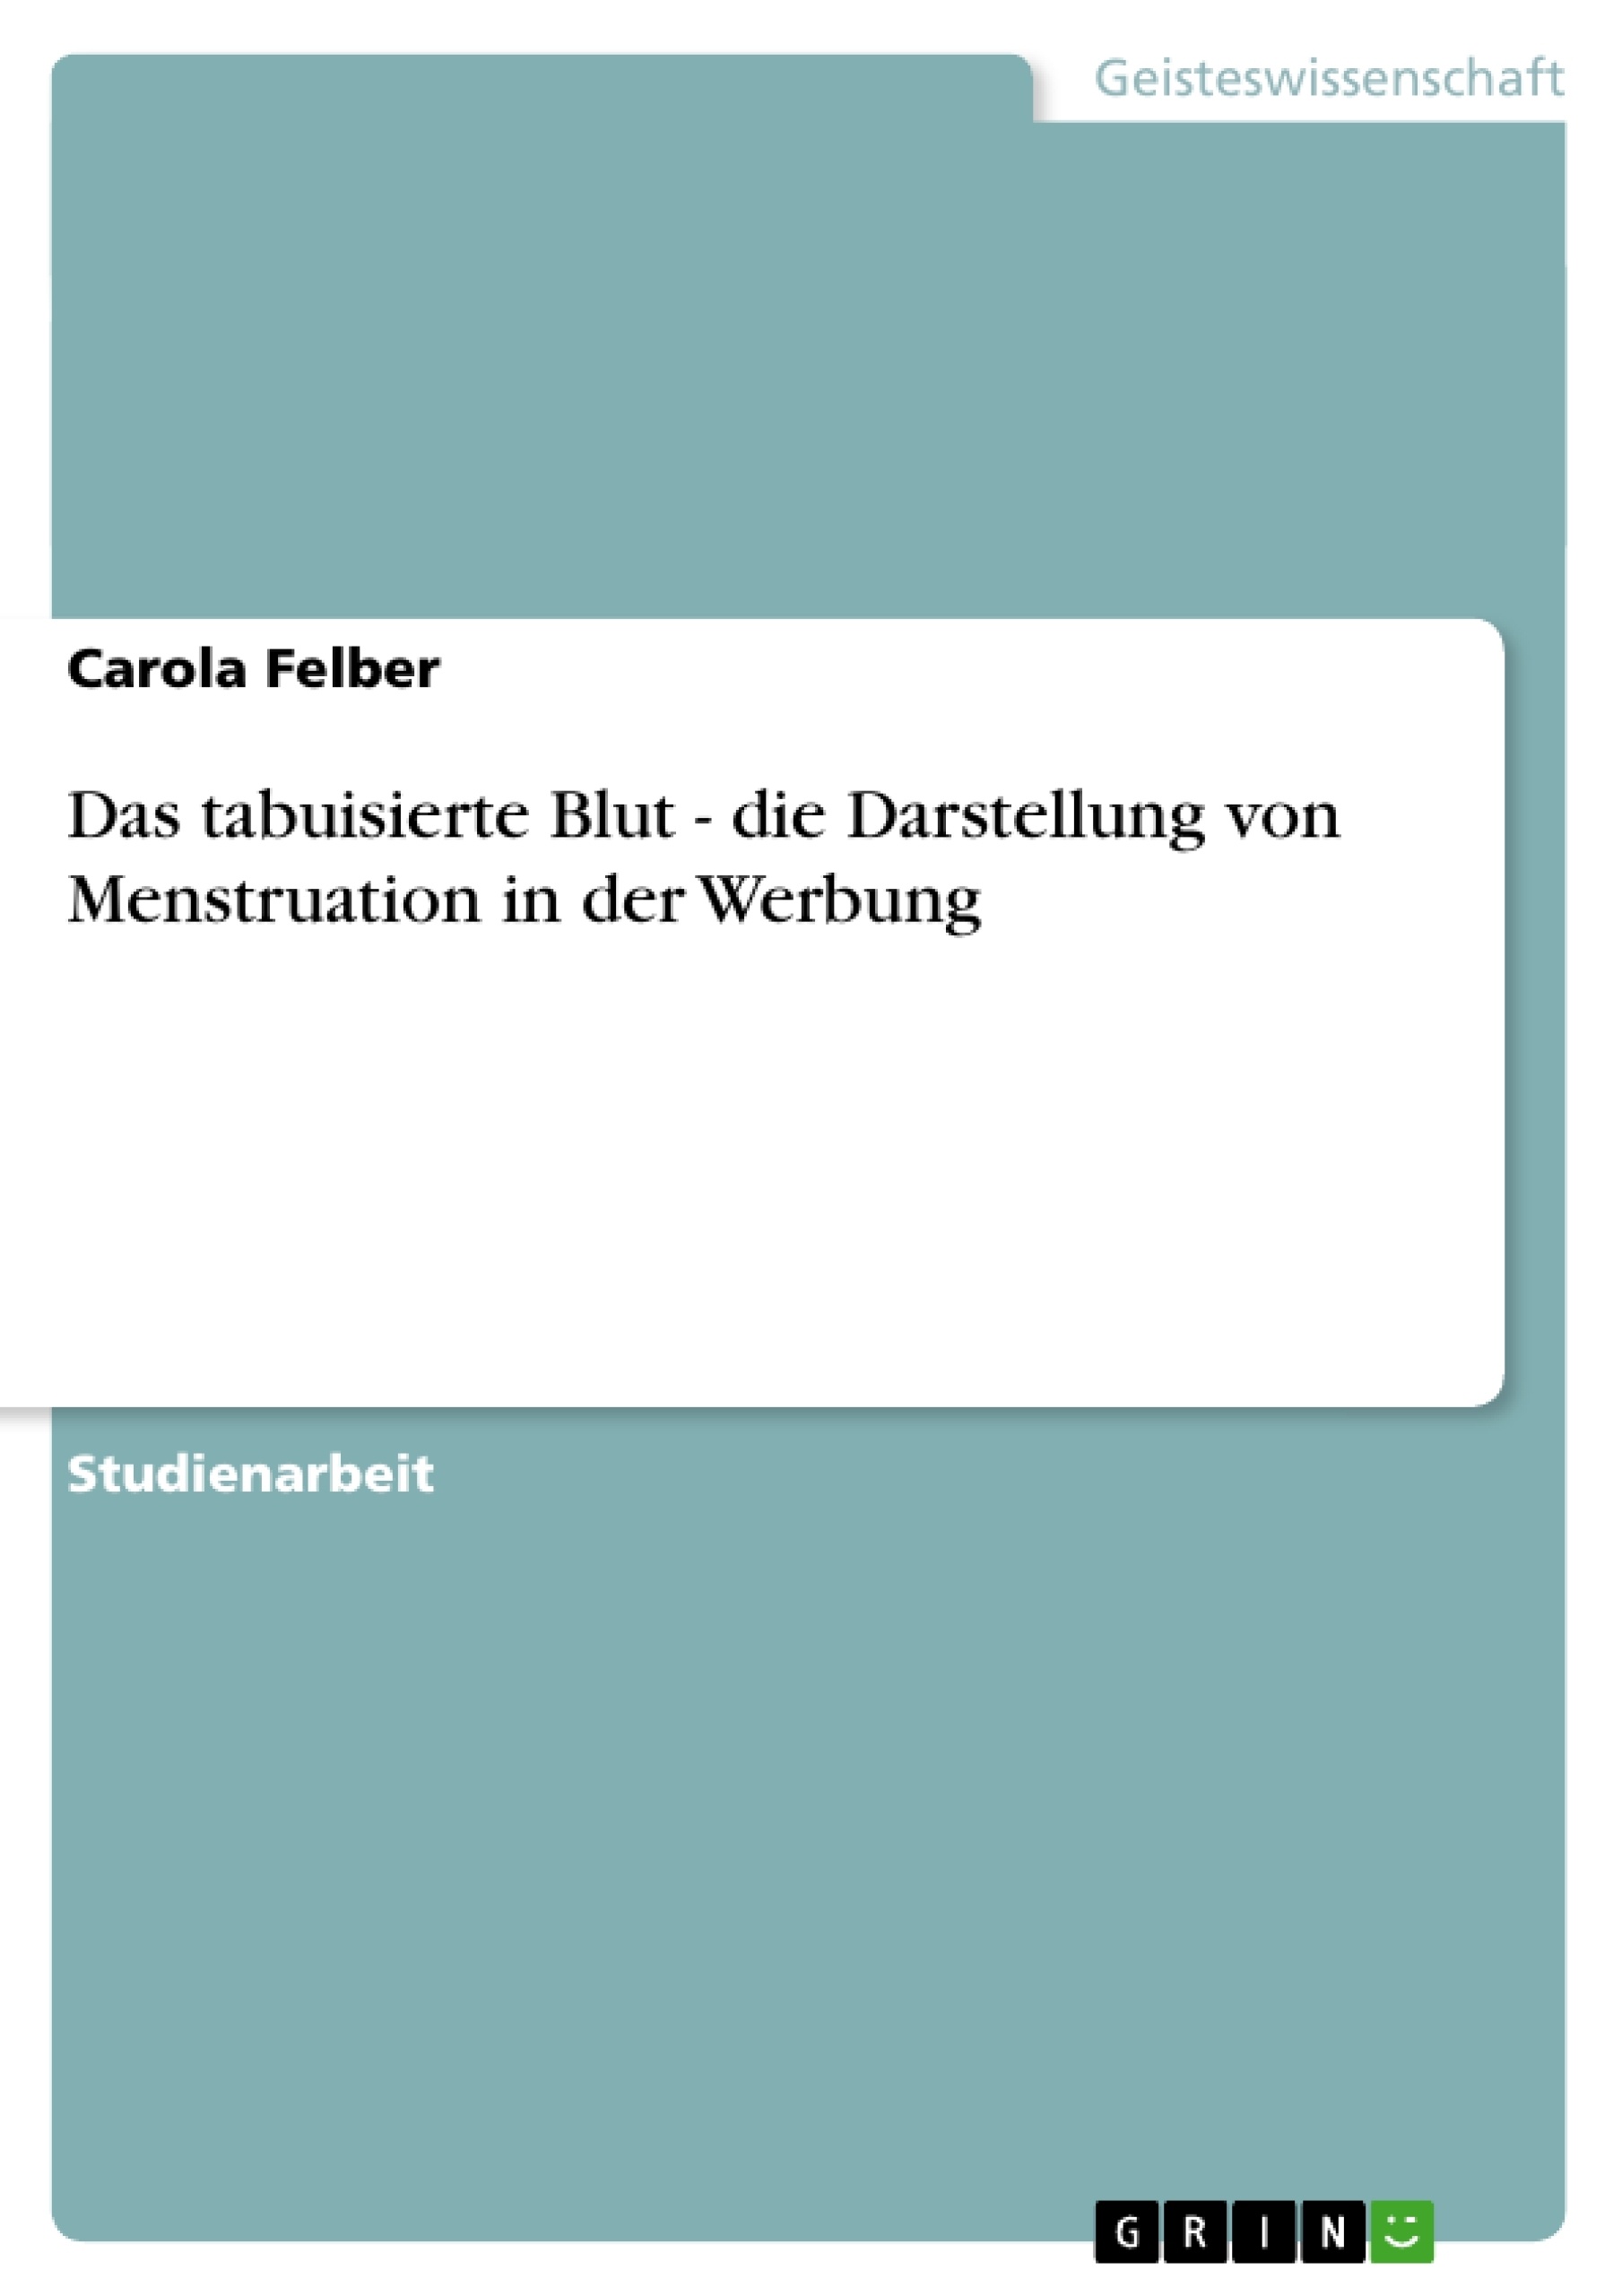 Titre: Das tabuisierte Blut - die Darstellung von Menstruation in der Werbung